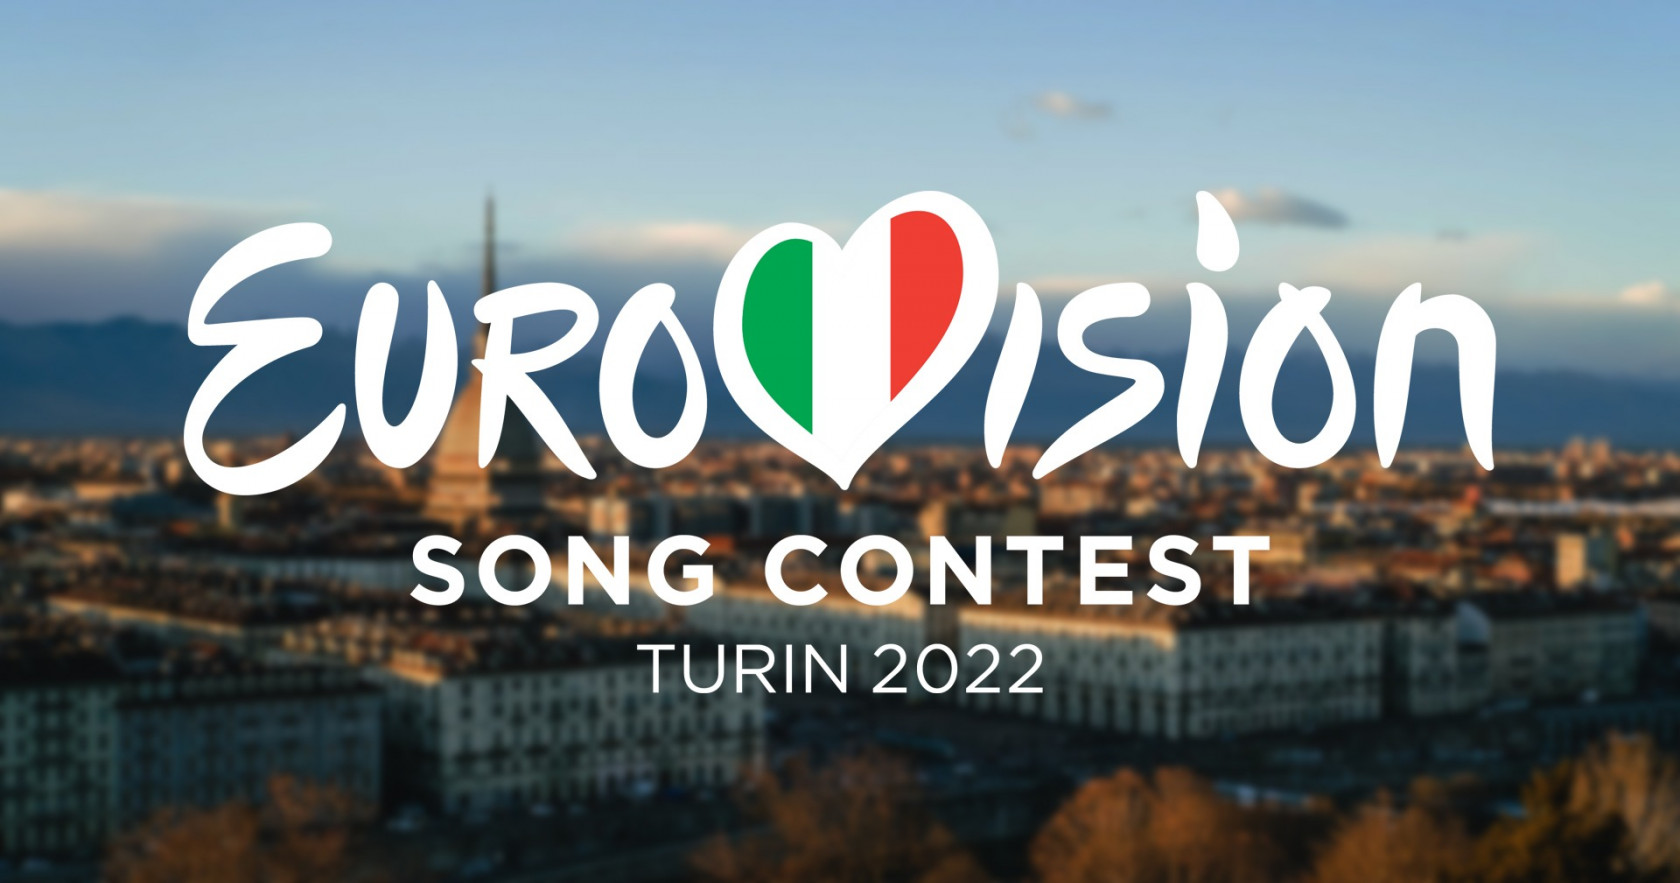 Torino, sede del 66esimo Eurovision Song Contest a Maggio 2022 su Rai 1